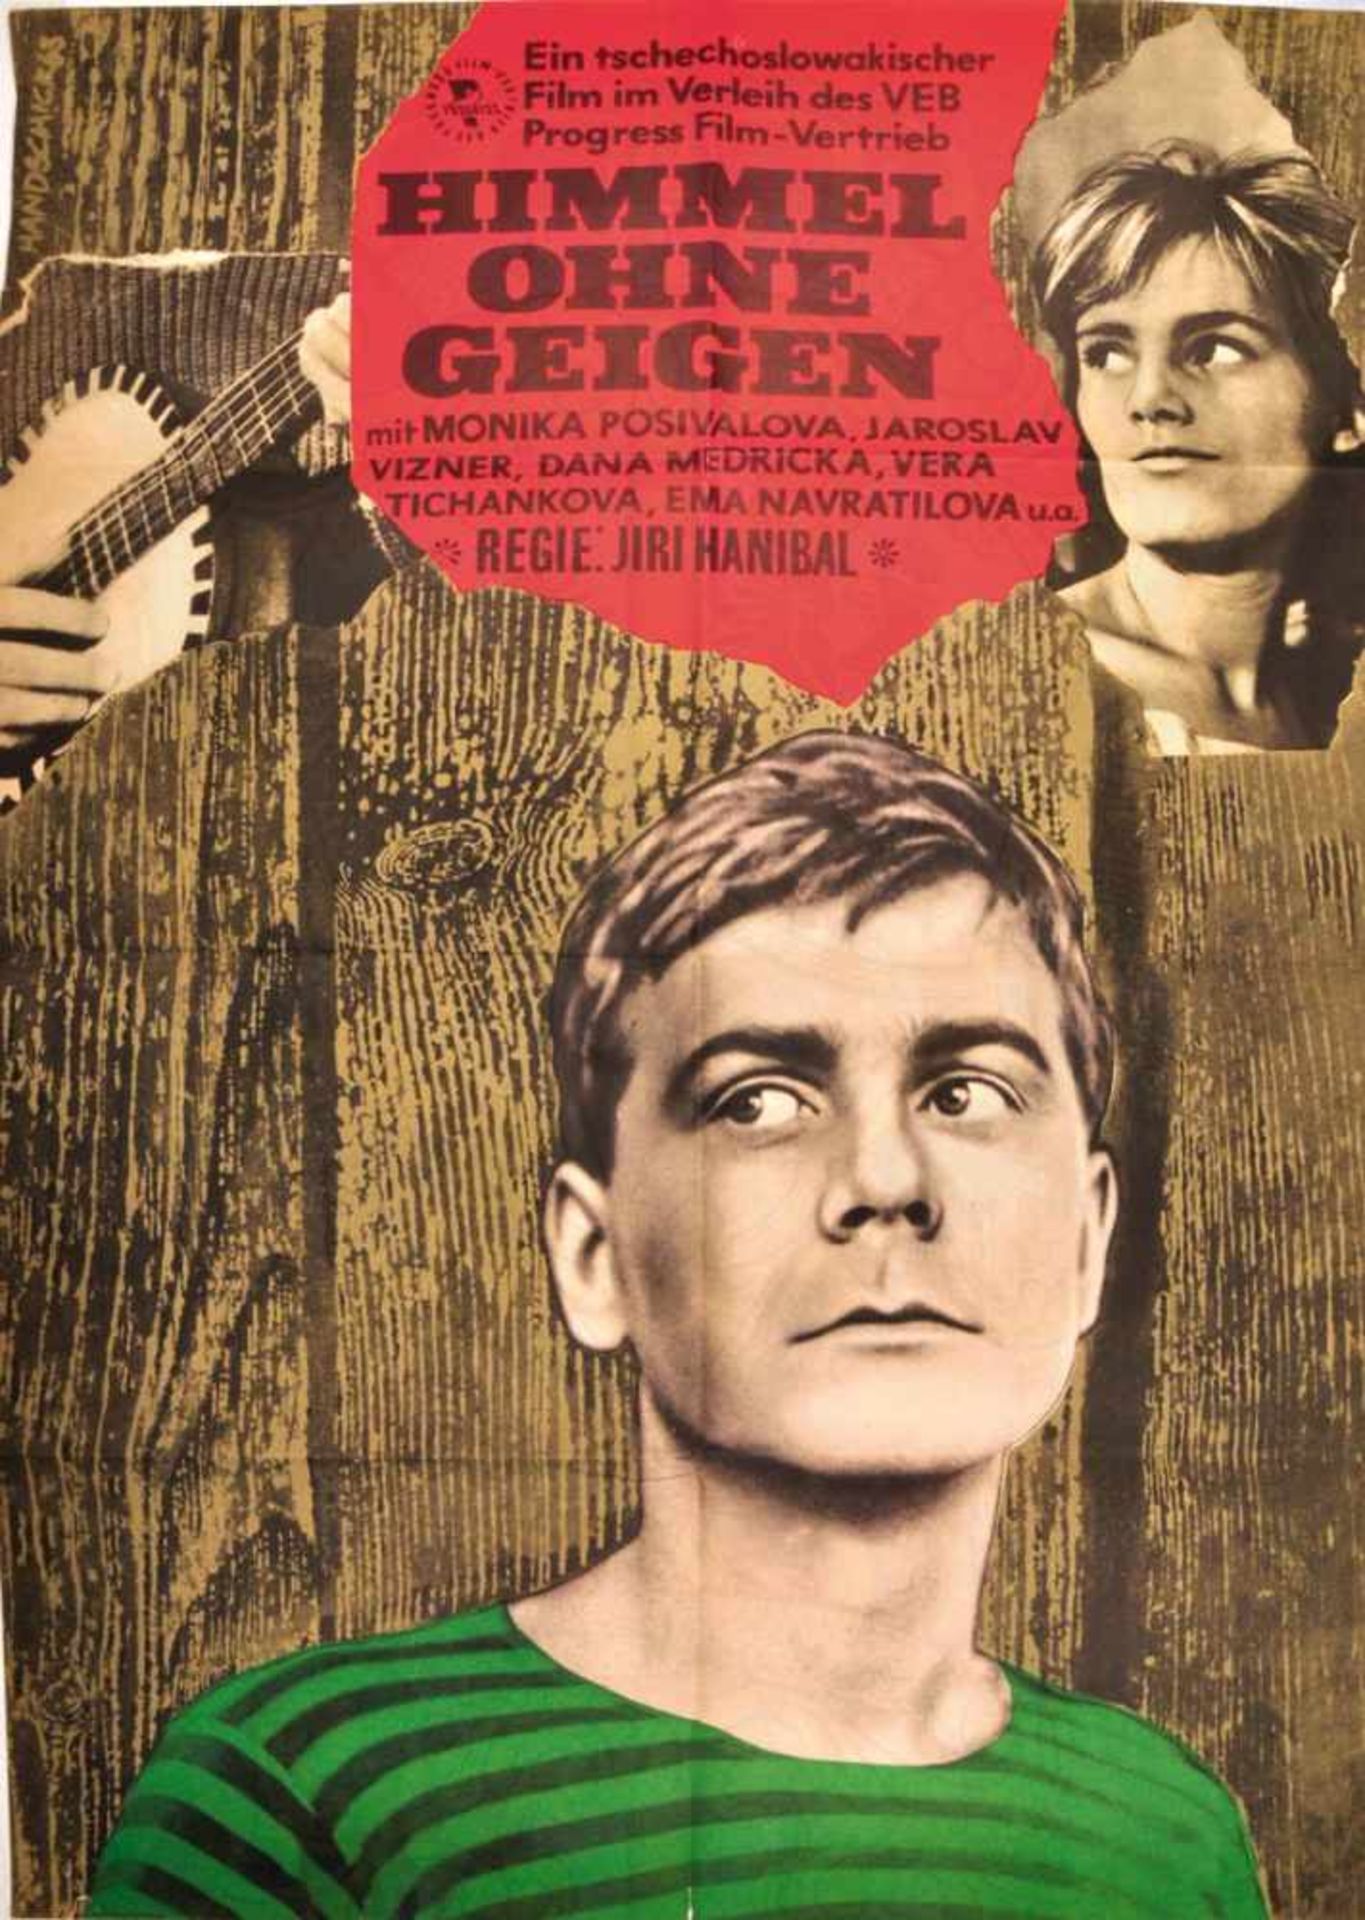 4 FILMPLAKATE 1963, VEB Progress-Film, tls. International: „Der Weg nach Oben“ m. Laurence Harvey, 2 - Bild 4 aus 4